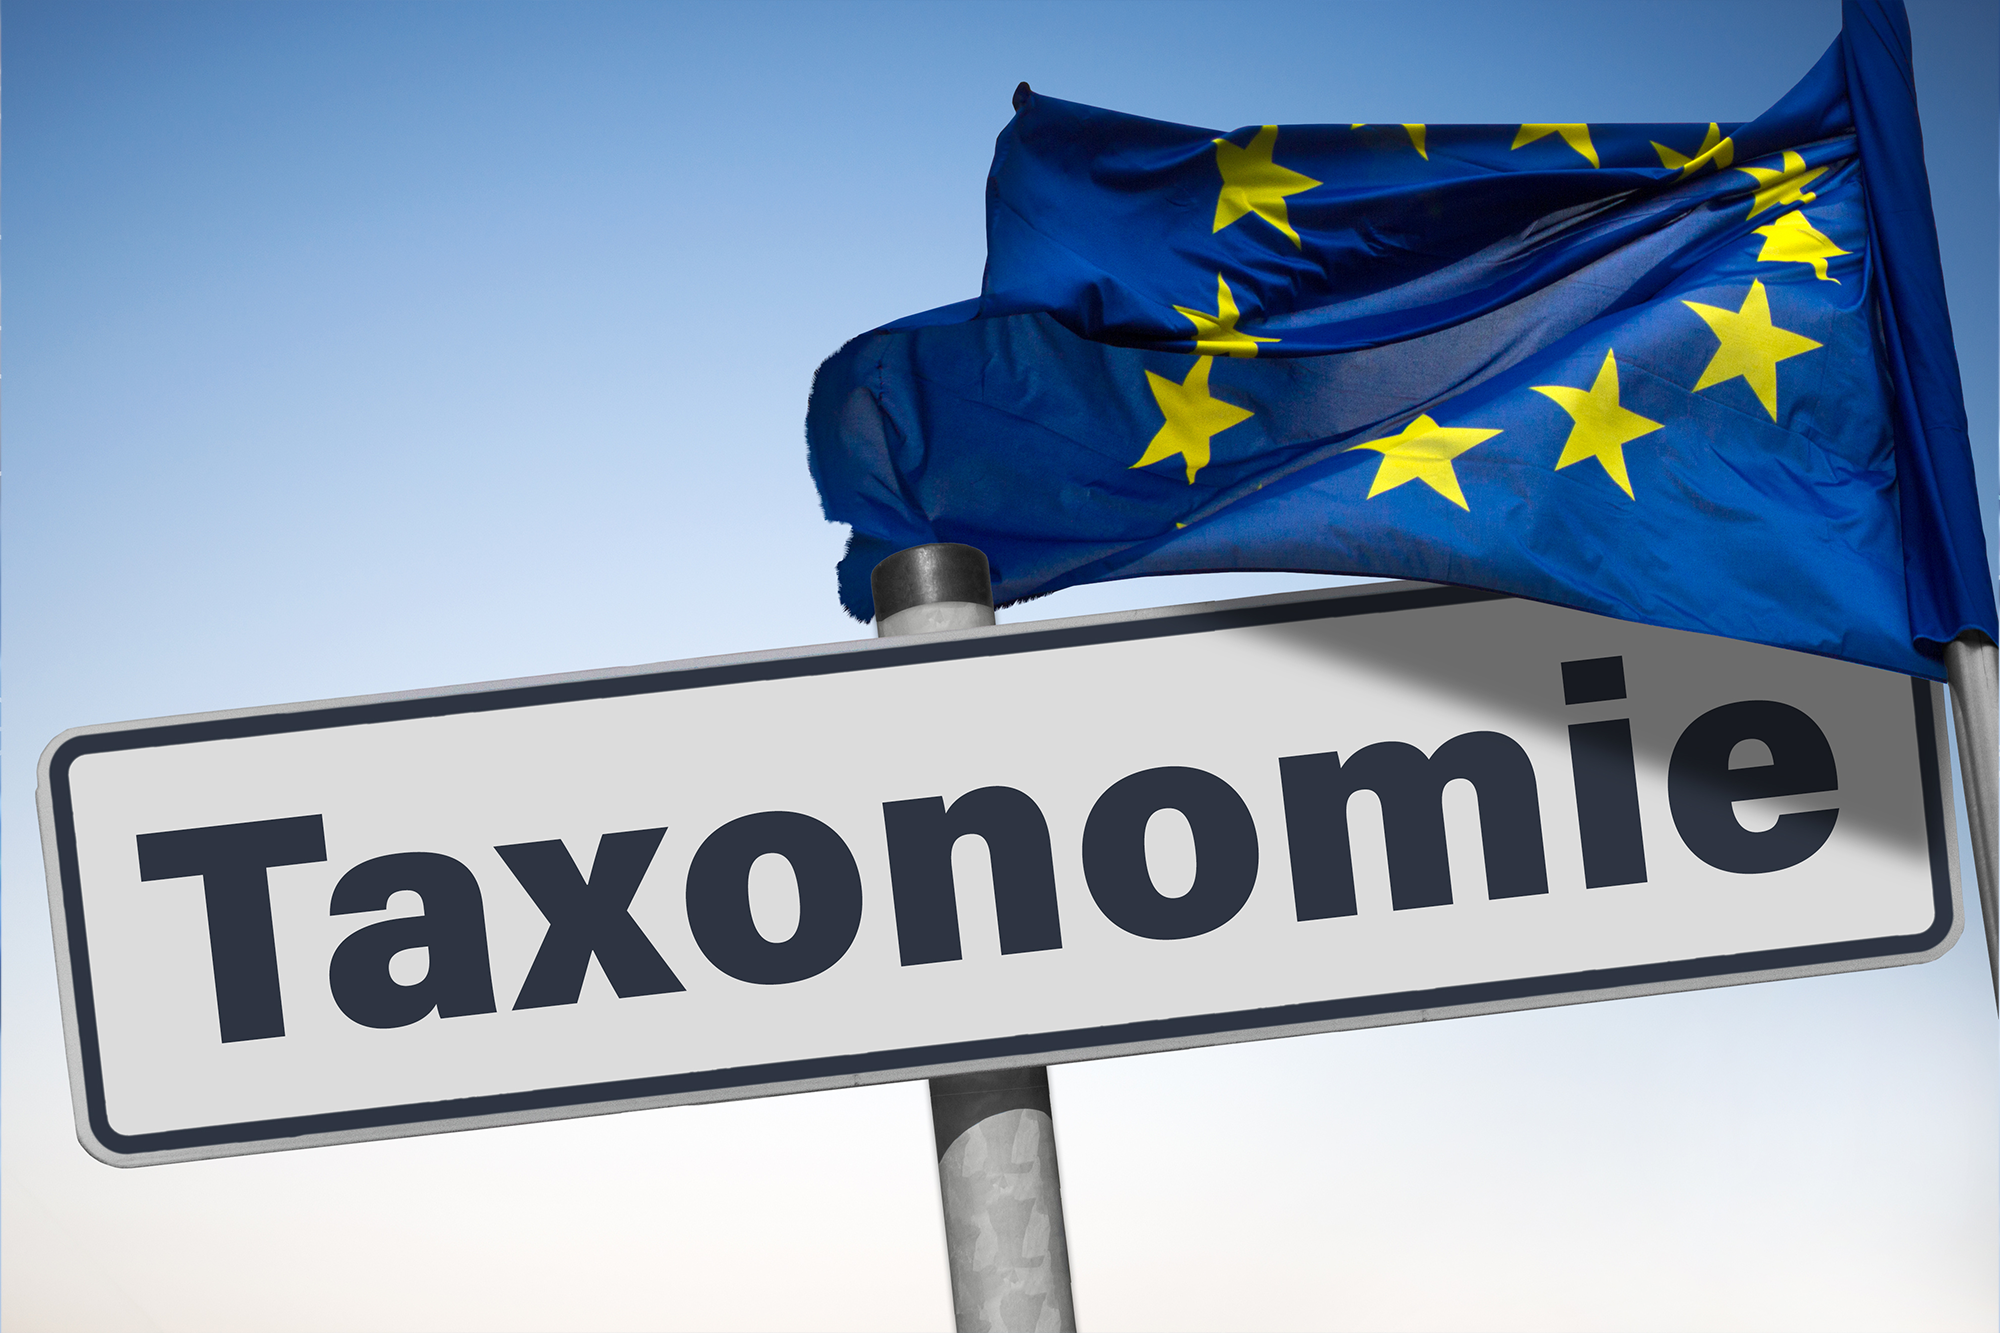 Taxonomie, Europäische Fahne